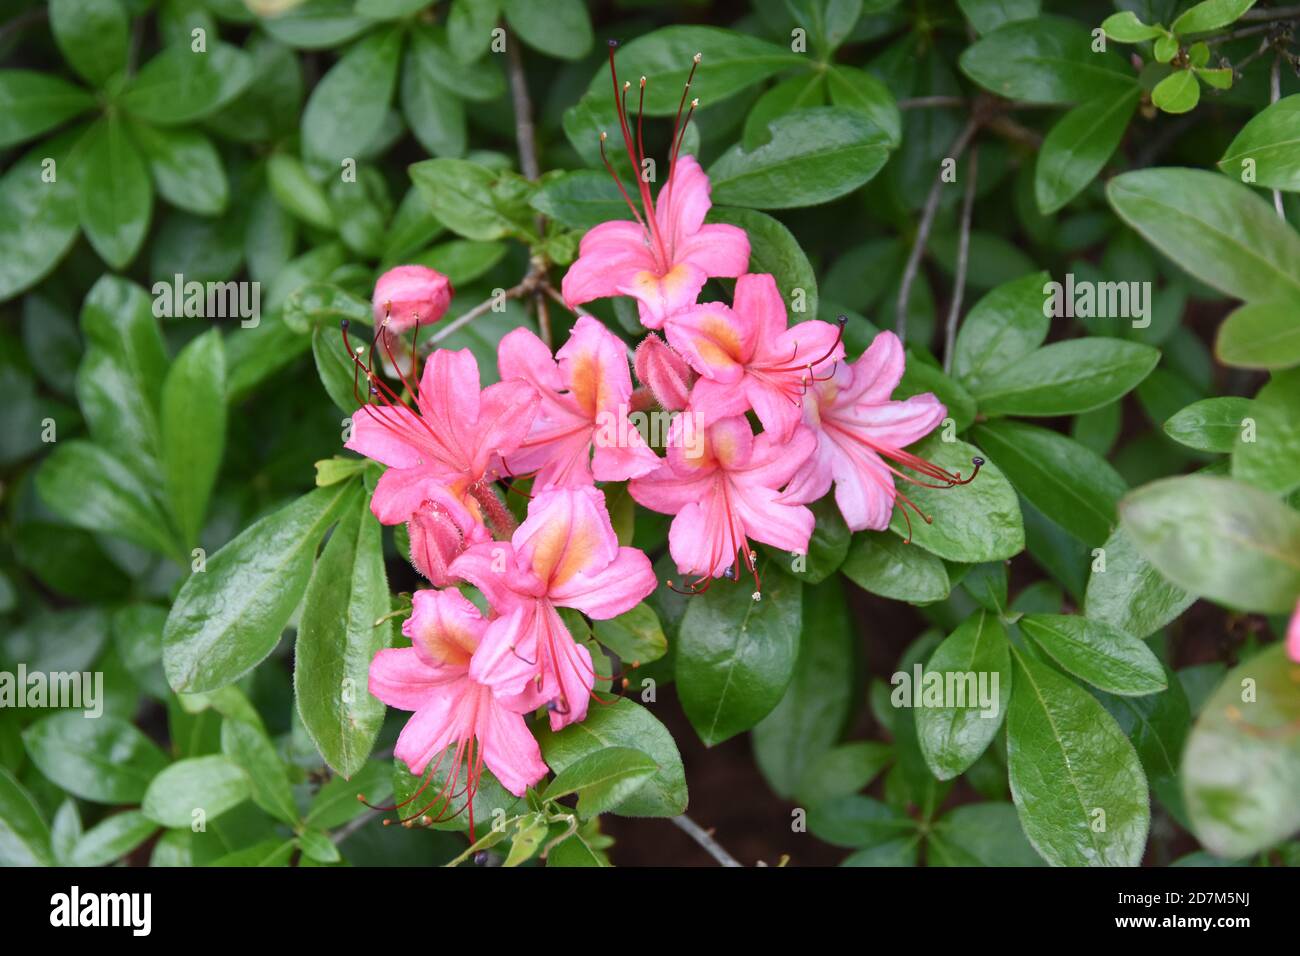 Azalea rosa e dolce (viscosum Azalea), arbusto sempreverde a foglia larga con fiori rosa tromba estremamente profumati Foto Stock